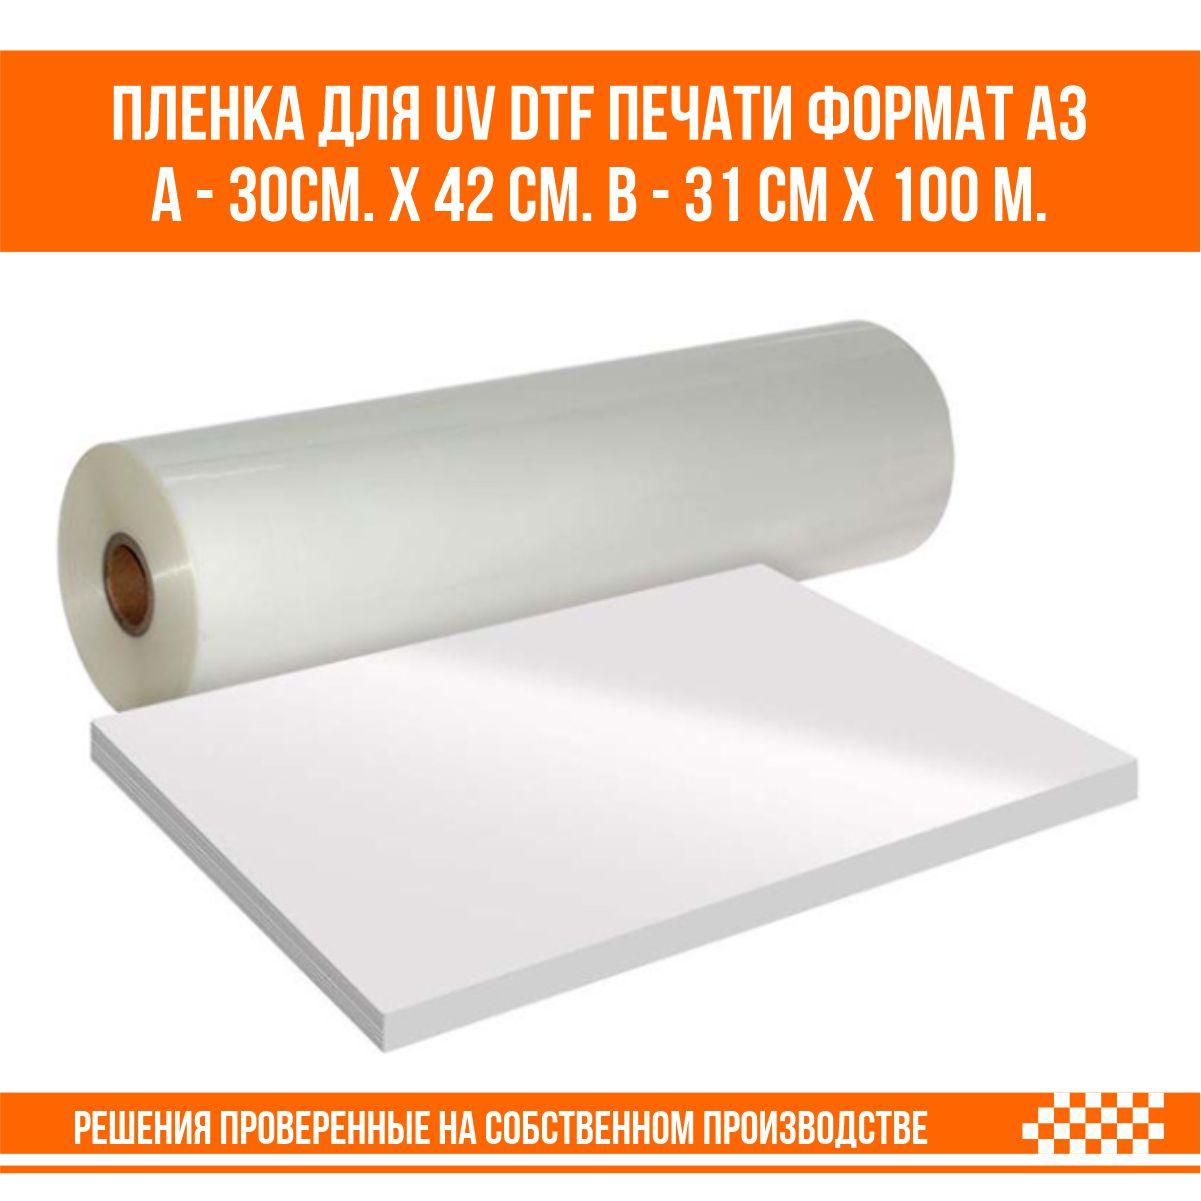 Пленка для UV DTF печати формат А3 100 листов А - 30см. х 42 см. B - 31 см х 100 м.